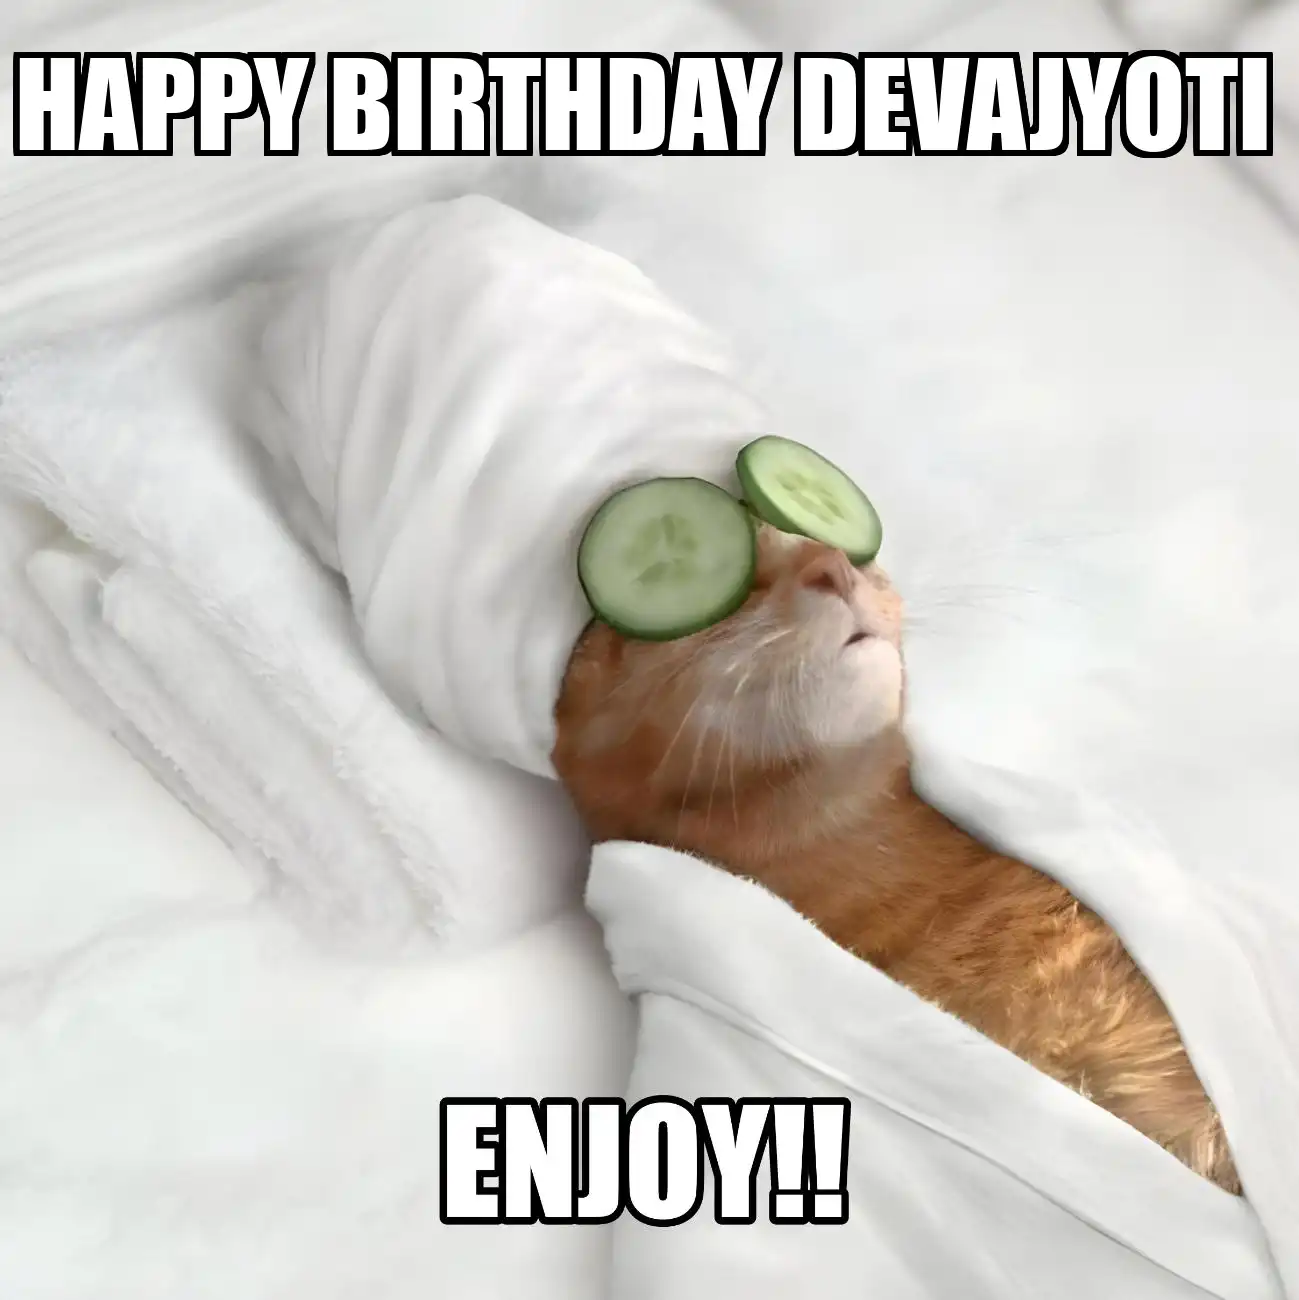 Happy Birthday Devajyoti Enjoy Cat Meme